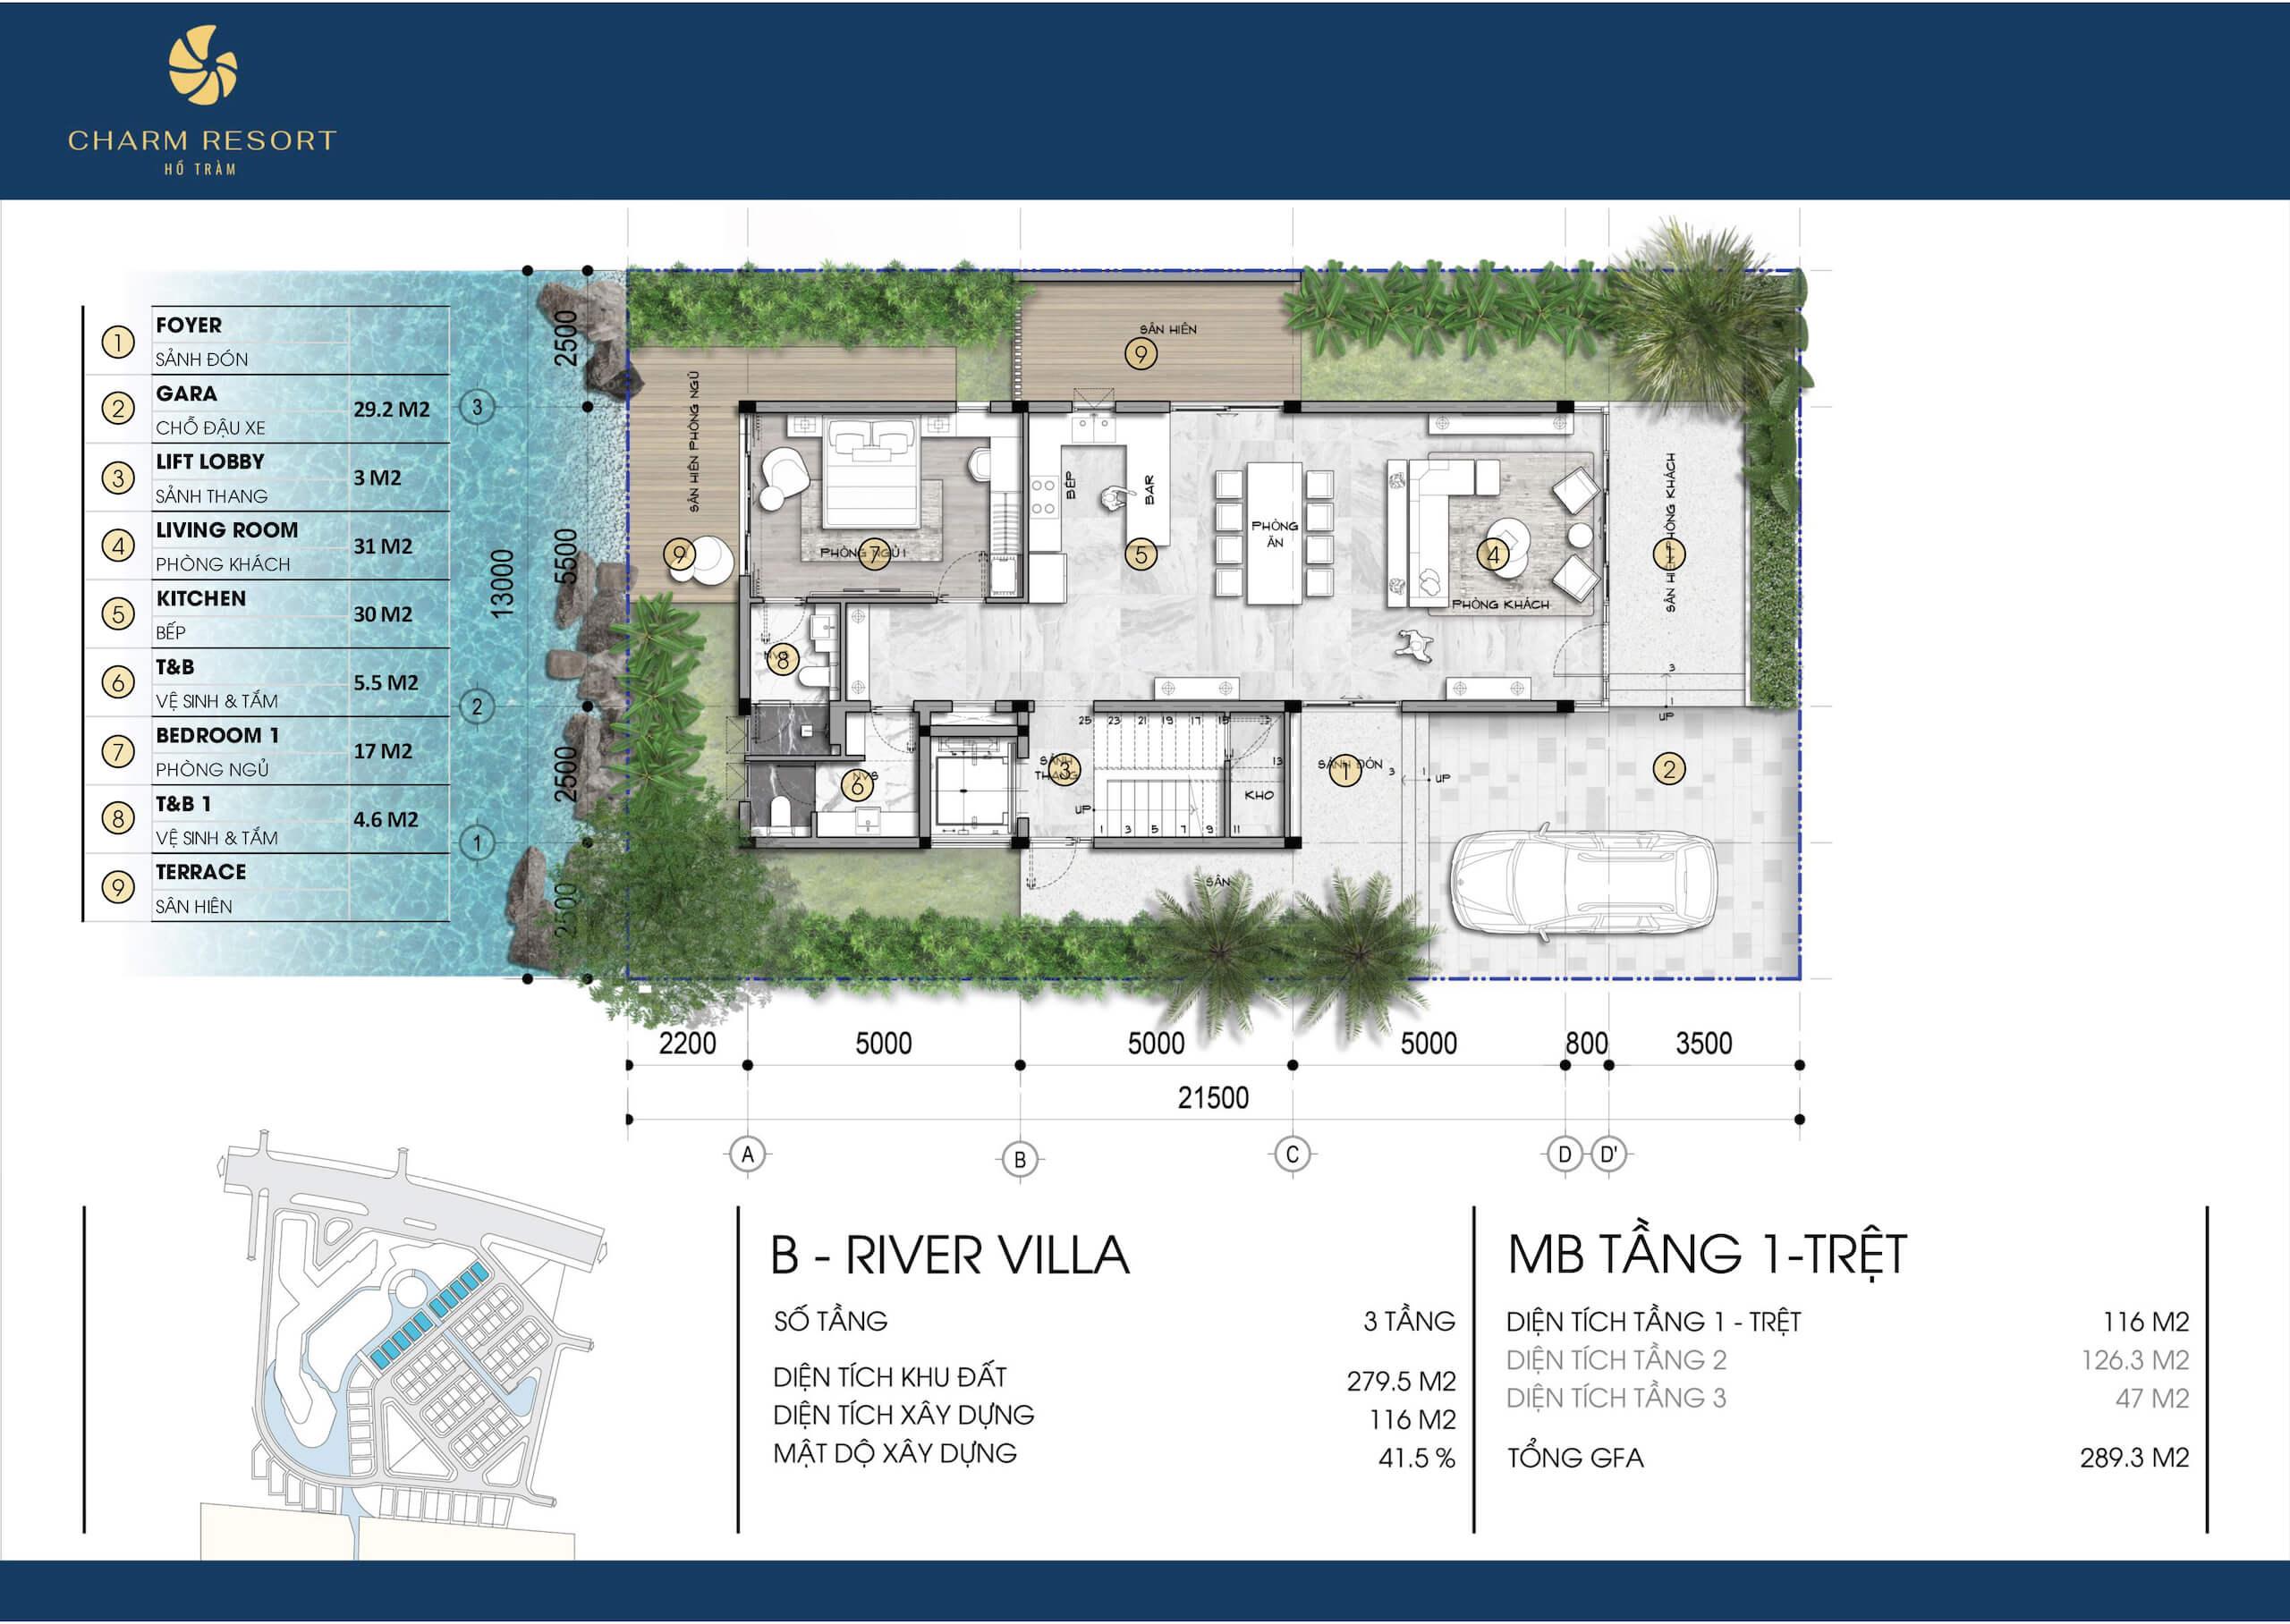 mặt bằng biệt thự Charm Resort Hồ Tràm mặt bằng River Villa